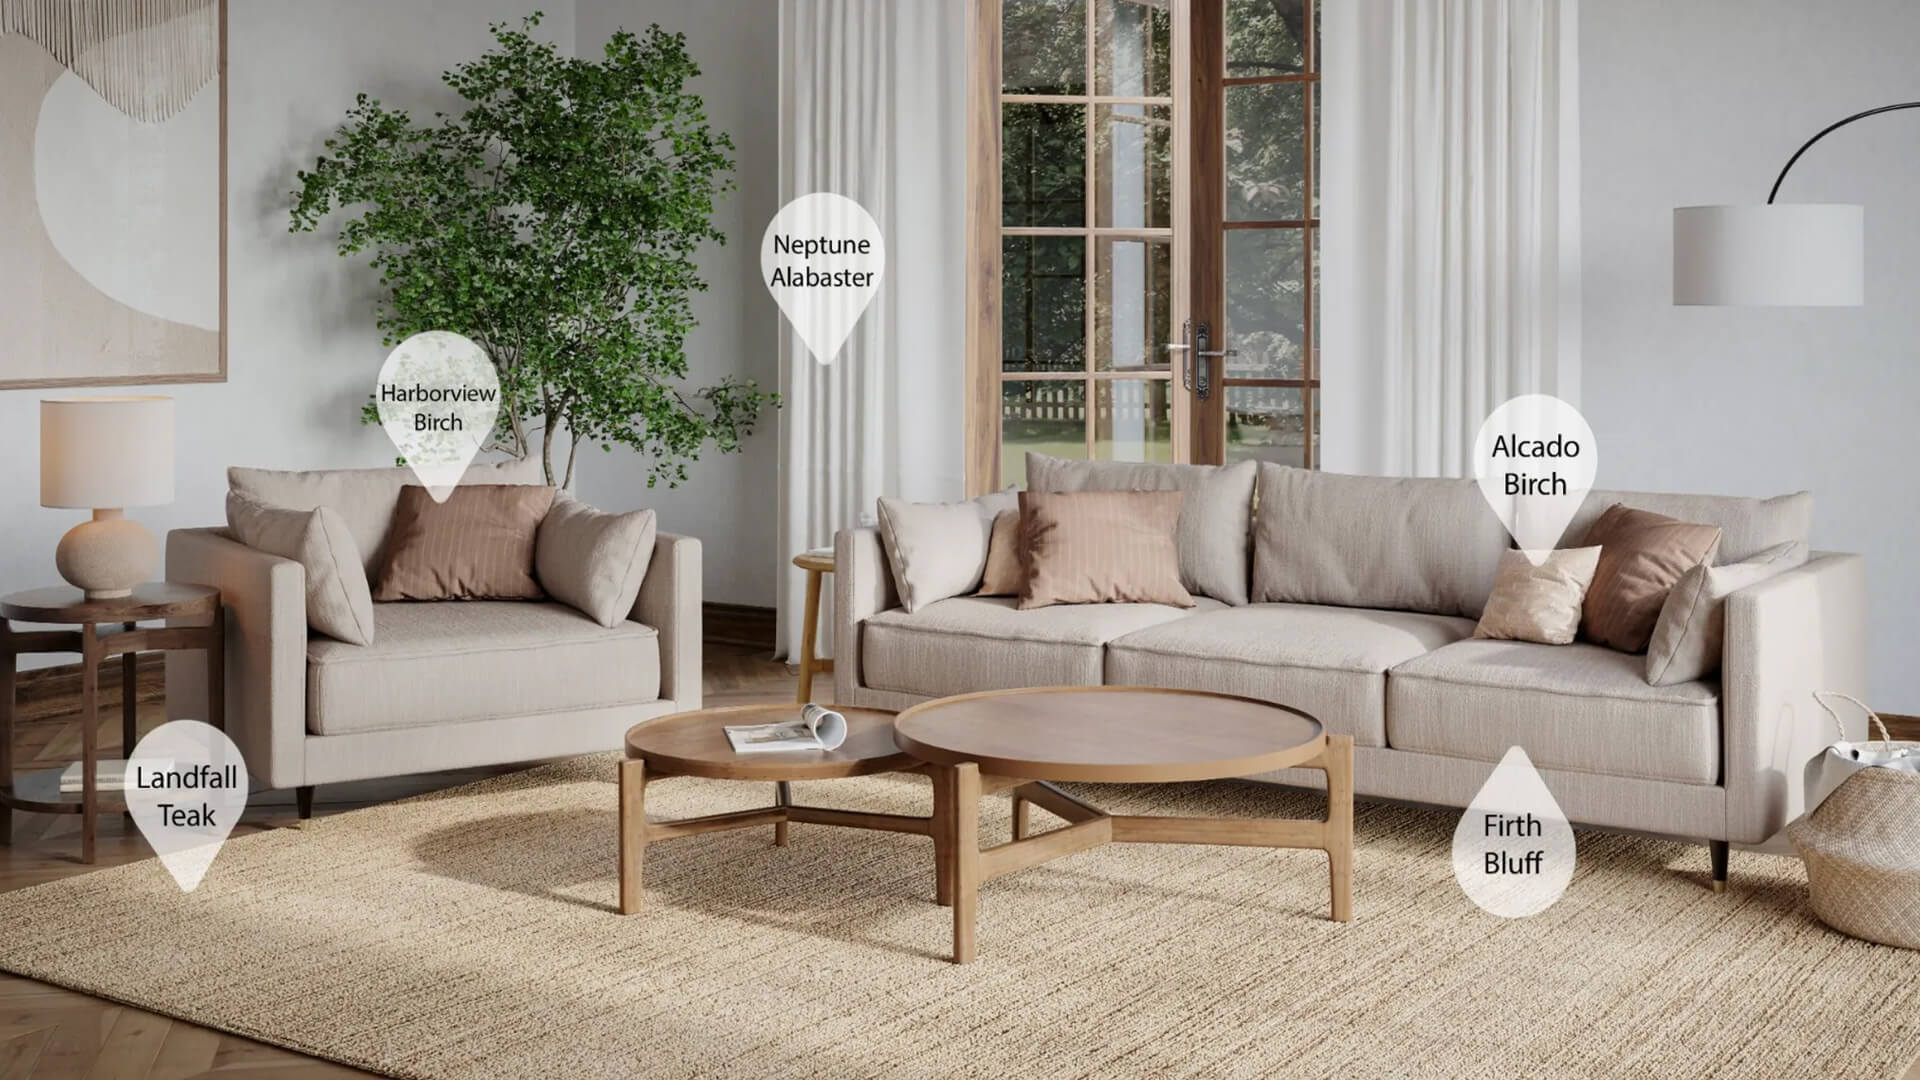 Living Room Furniture Rendering for Instagram Sales